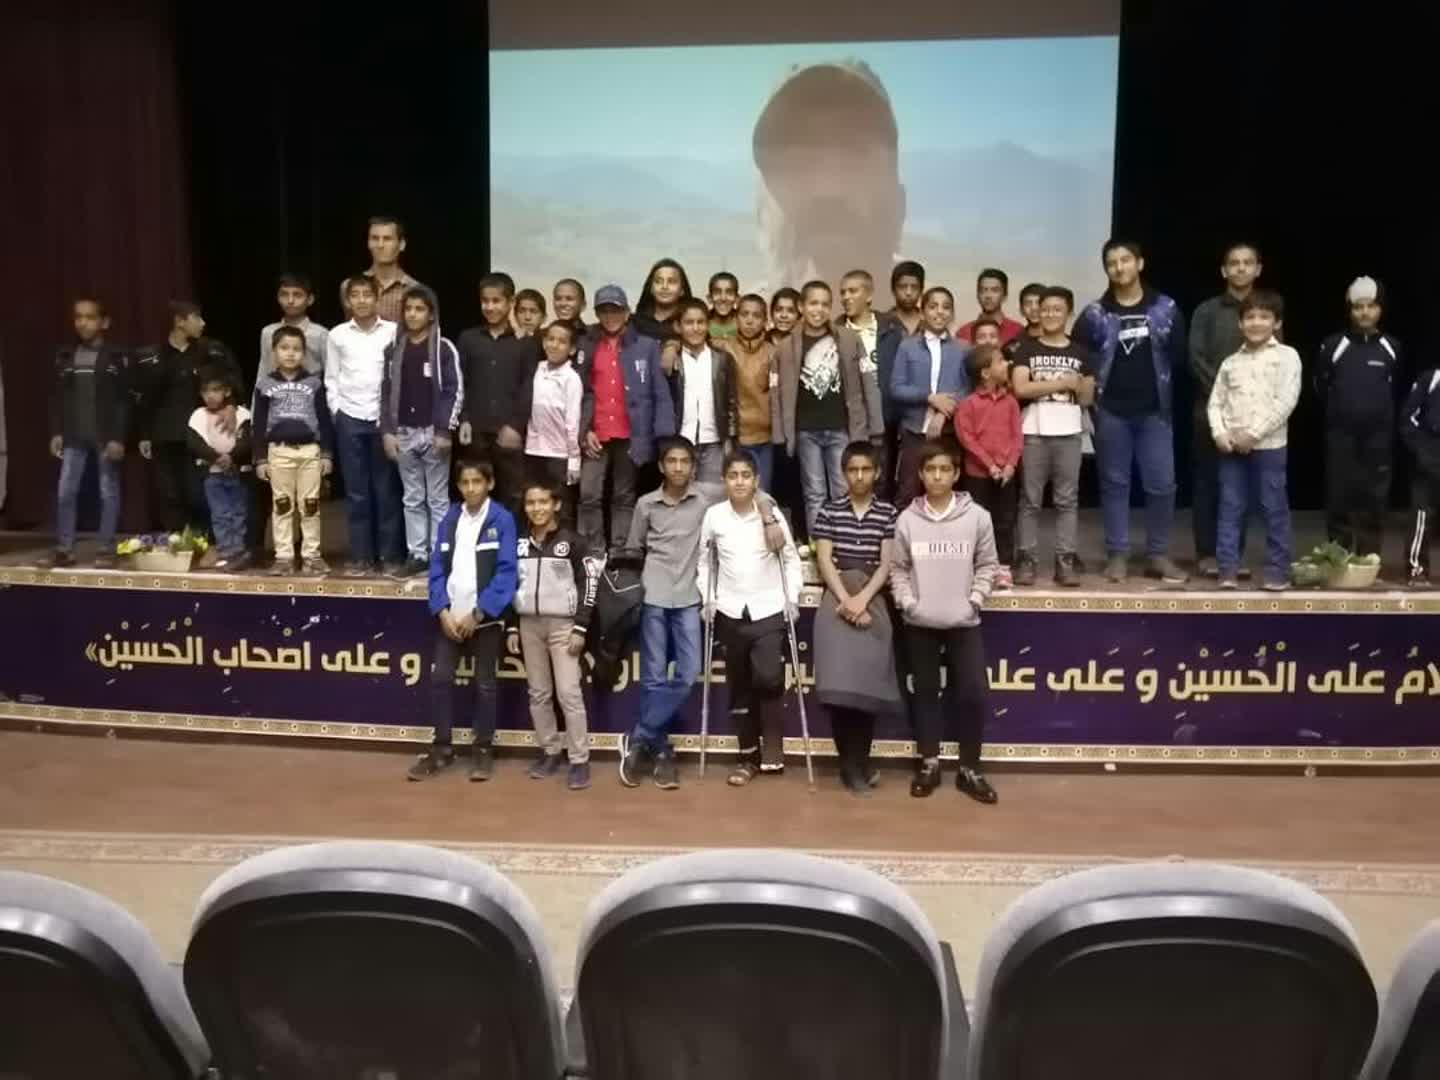 فیلم «منطقه پرواز ممنوع» ویژه اعضای کانون های مساجد جنوب کرمان اکران شد